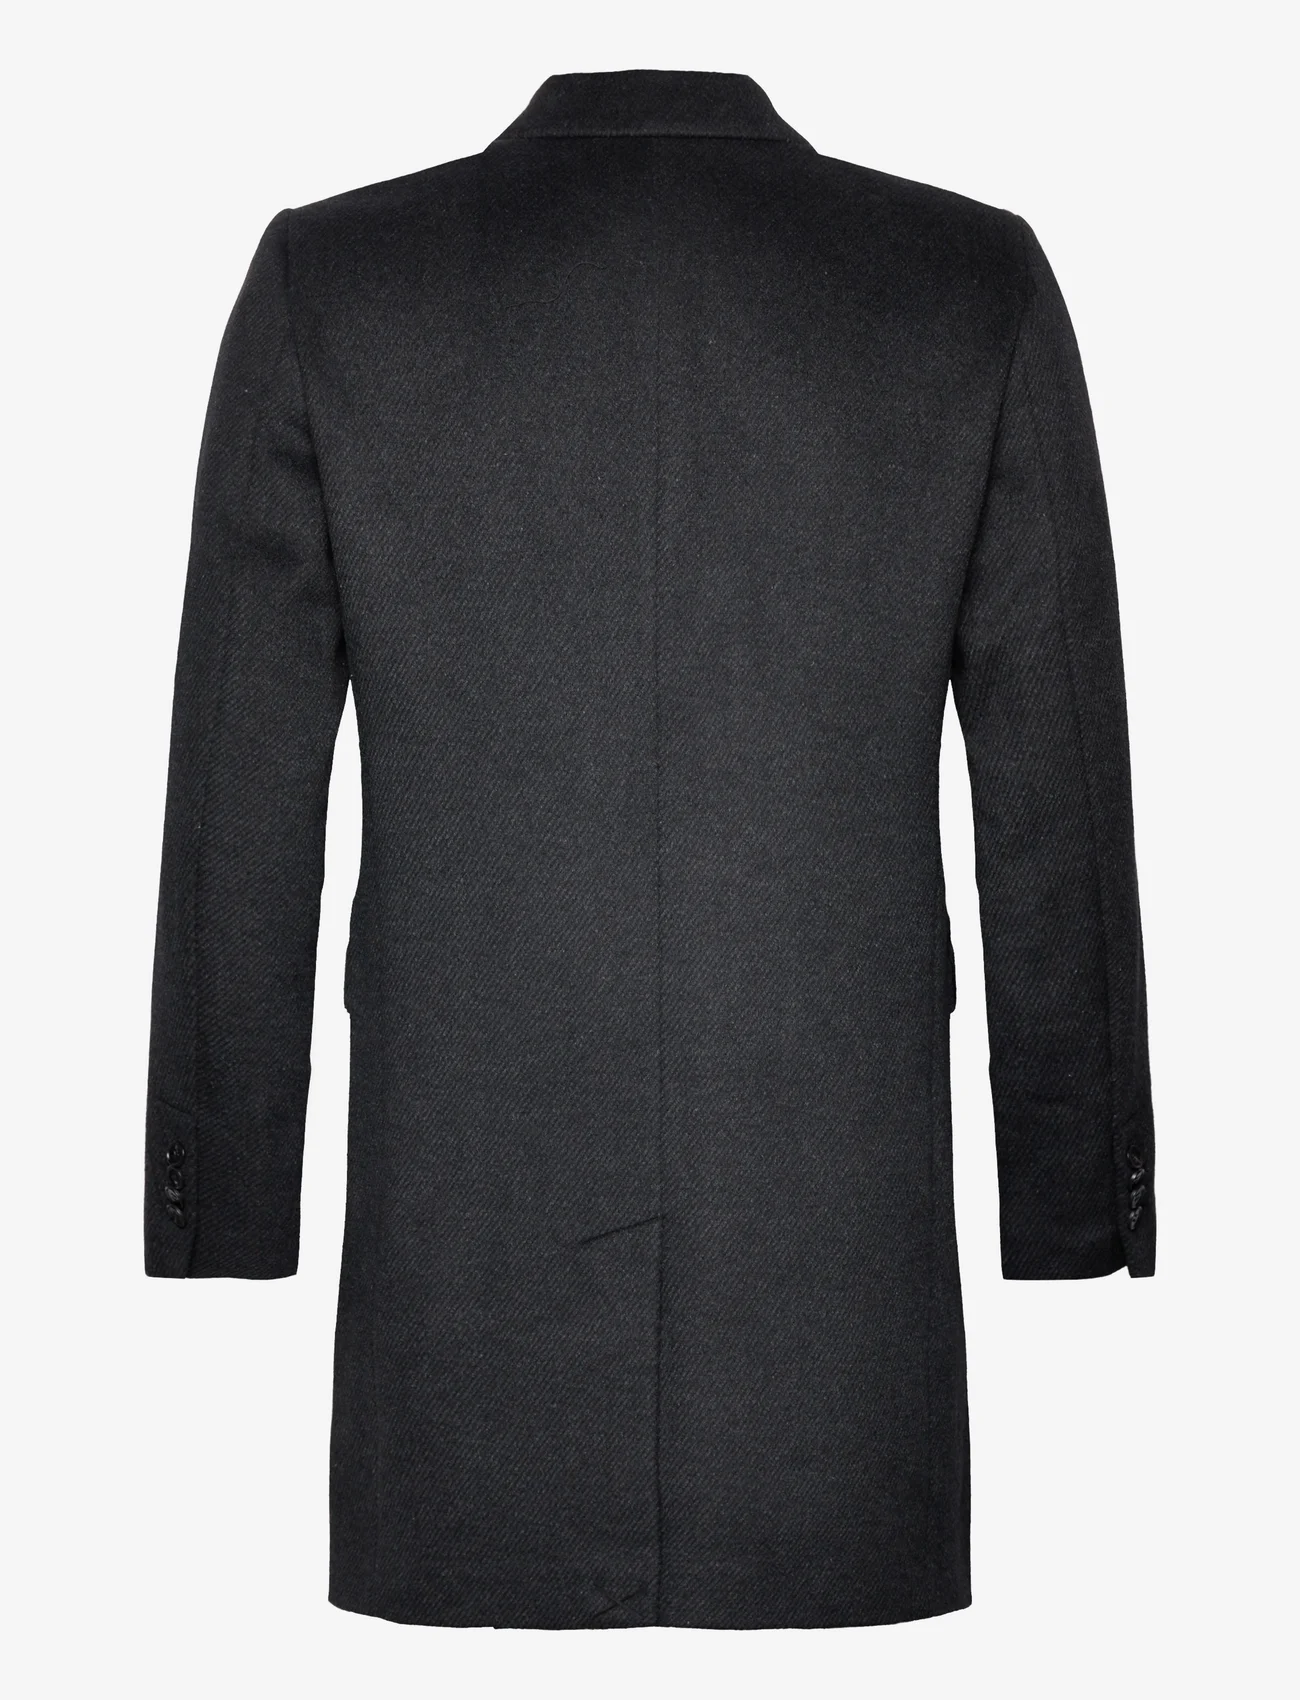 Bruuns Bazaar - FuzzyBBDoubalina coat - ziemas jakas - black melange - 1